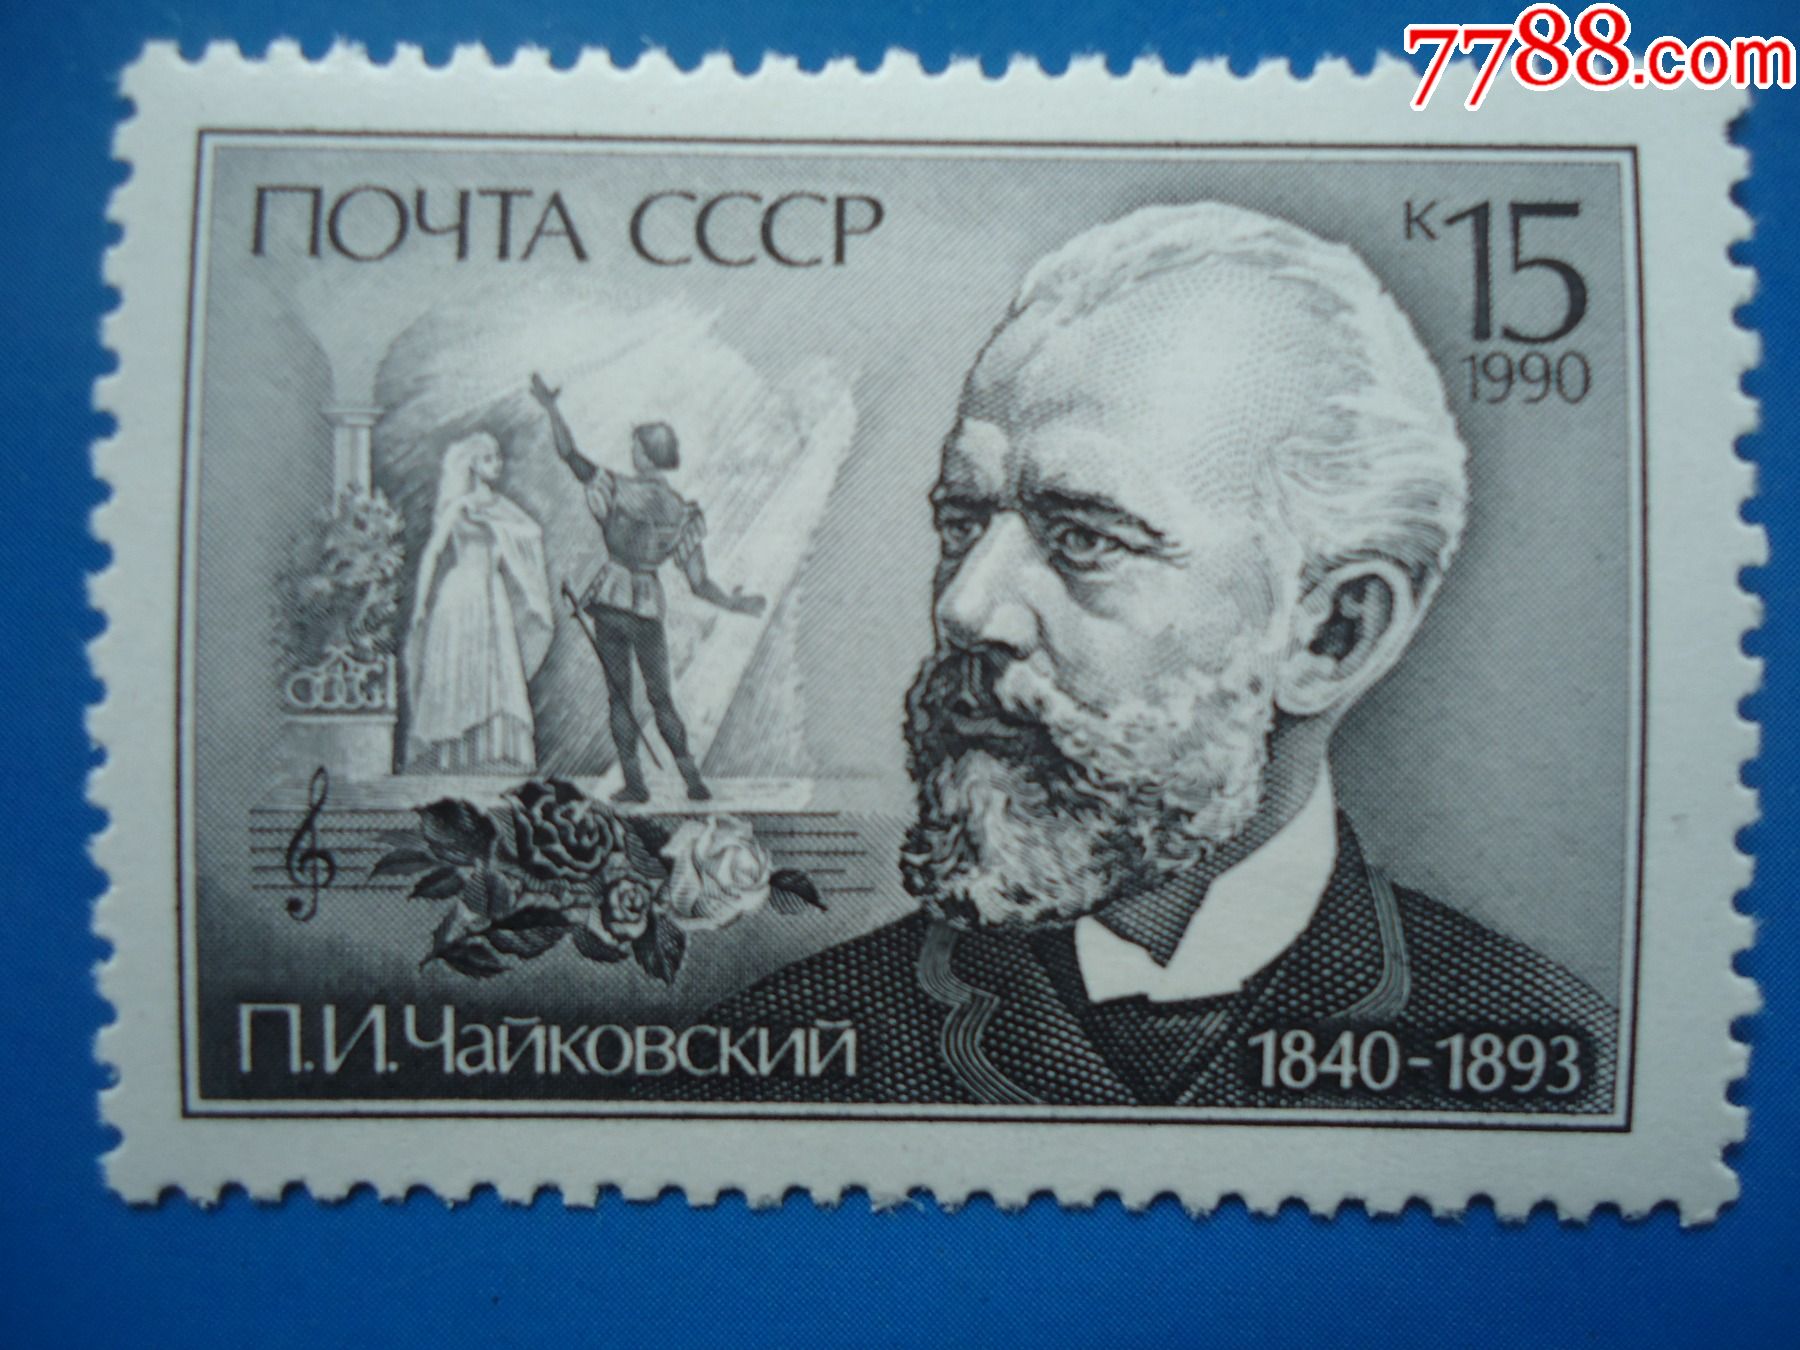 俄罗斯浪漫乐派作曲家—柴可夫斯基(1840—18*3)